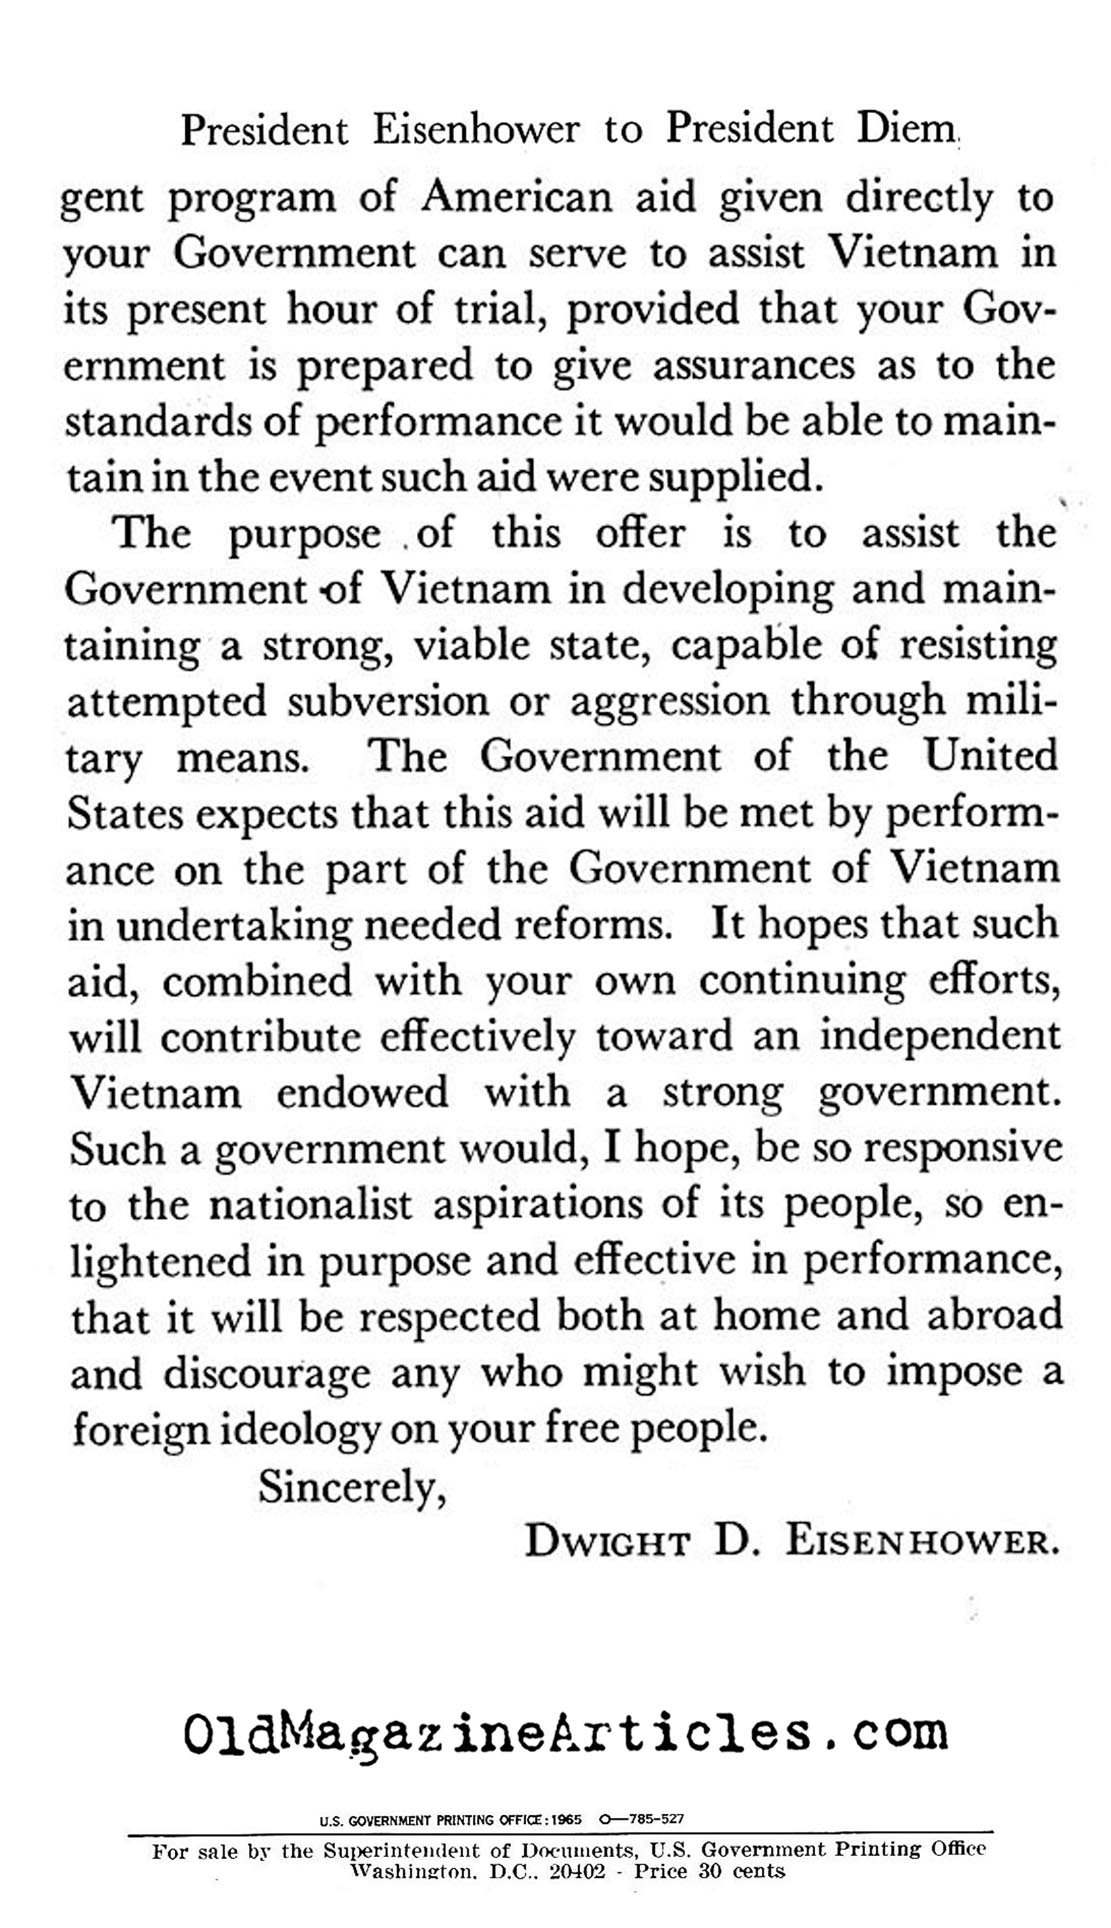 President Eisenhower's Letter to President Diem<BR> (Why Vietnam, 1965)